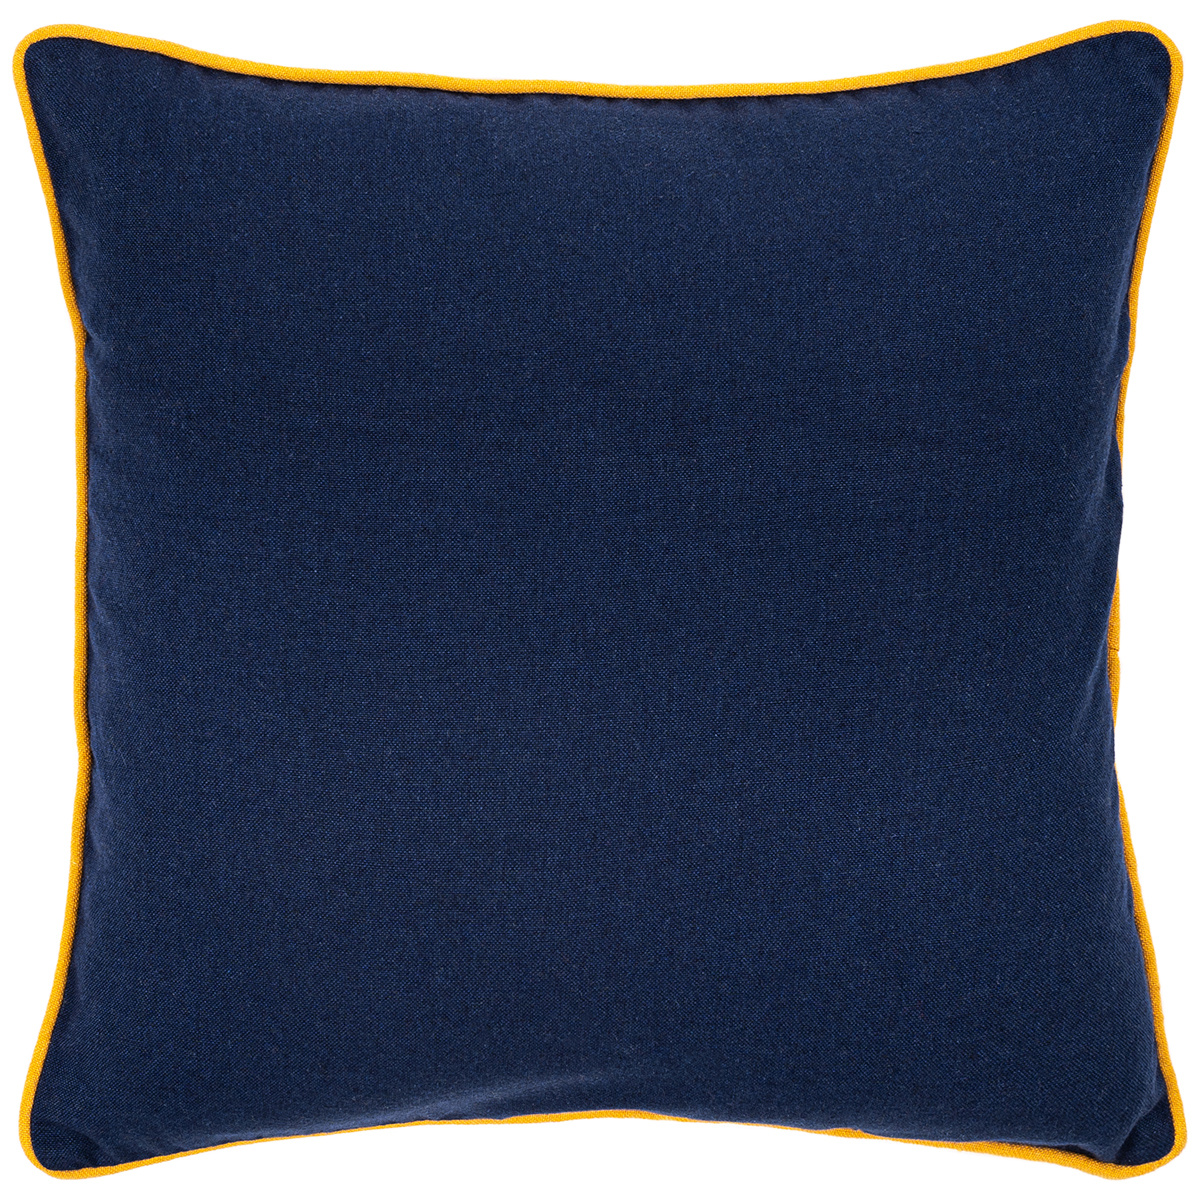 Trade Concept Povlak na polštářek Heda tm. modrá / žlutá, 40 x 40 cm